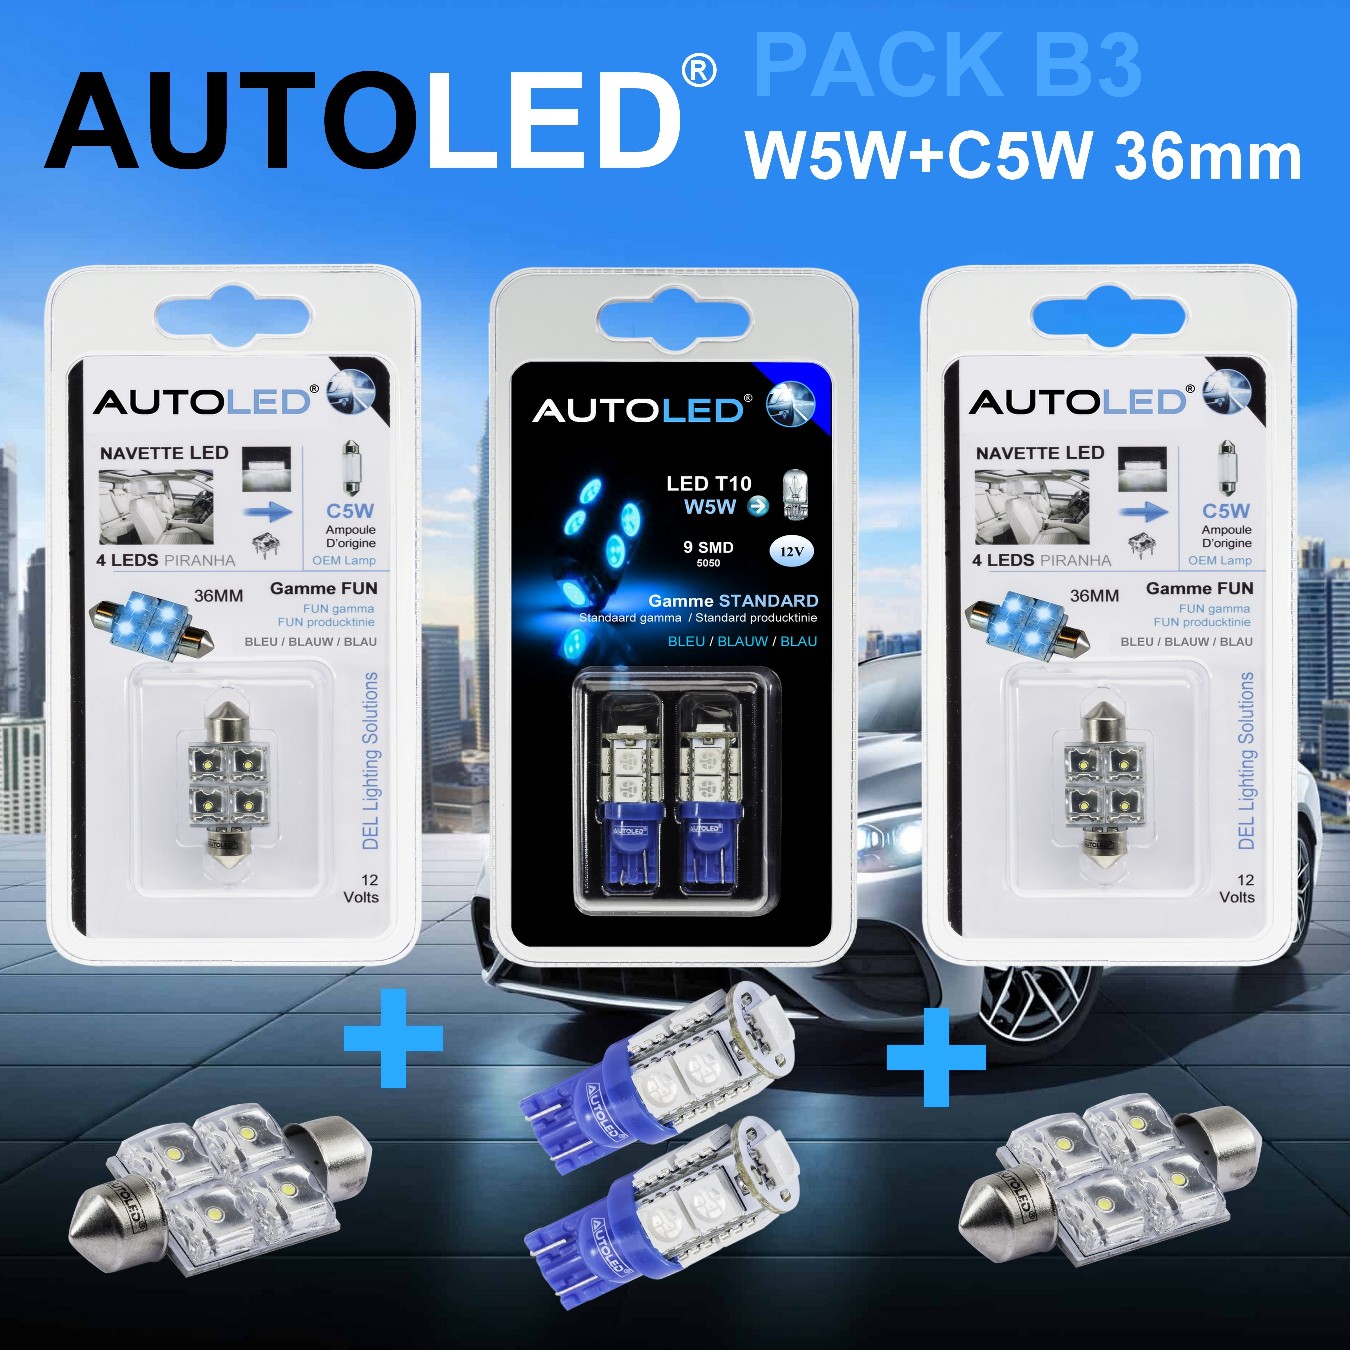 Pack-4-ampoules-led-bleu-habitacle-plafonnier-boite -a gants-coffre-t10-9leds-w5w-navettes-c5w-personnalisation-eclairage-led-autoled-pack-b3.2